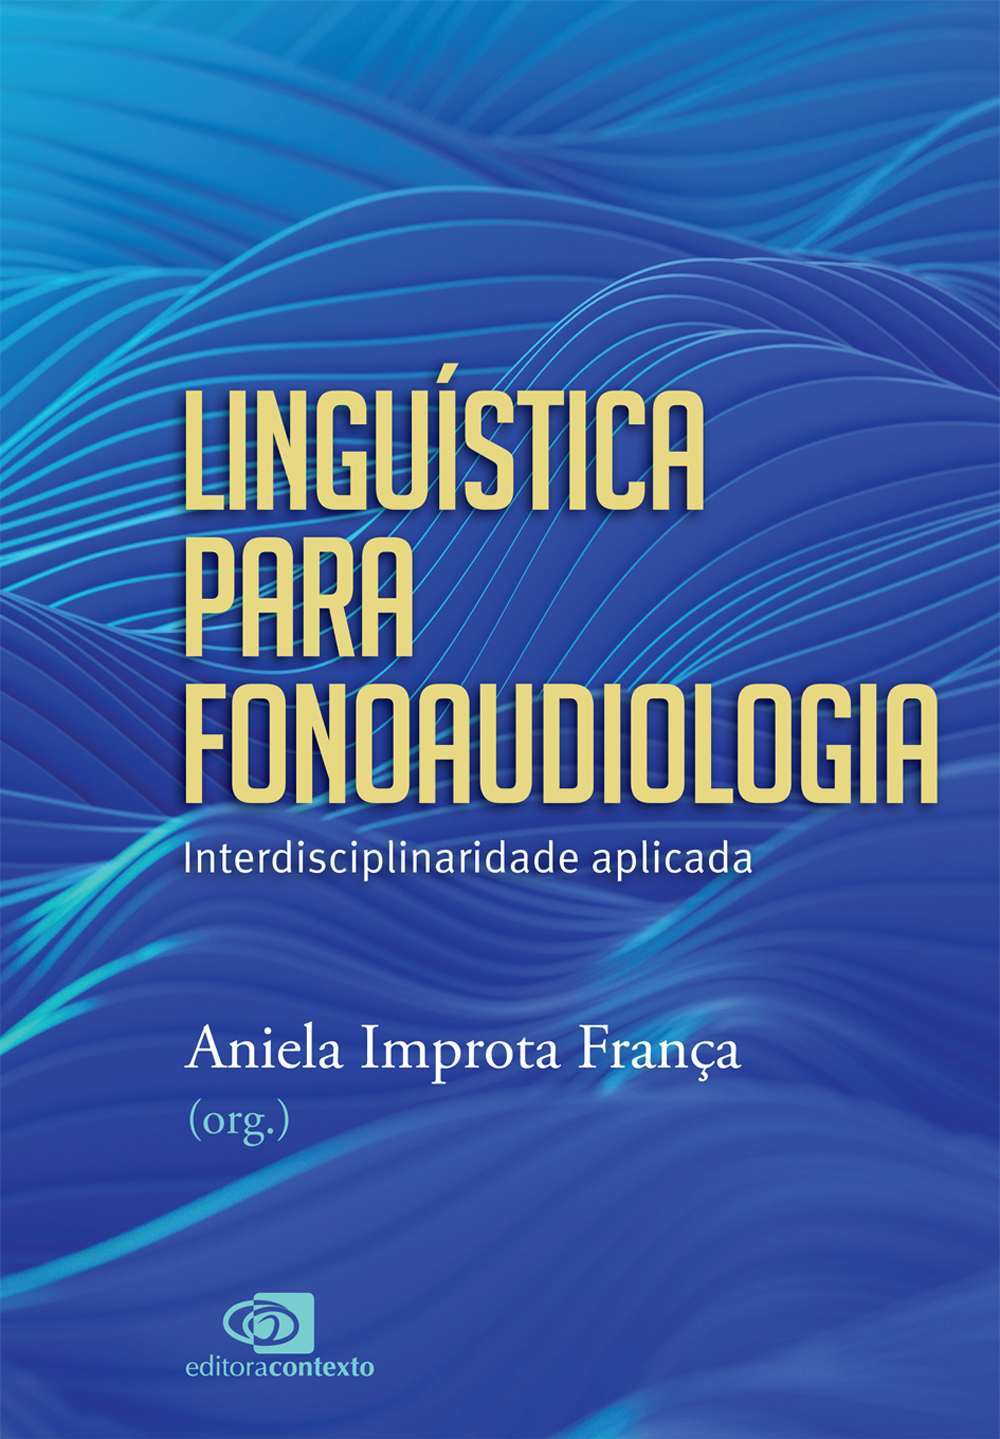 Linguística para fonoaudiologia | Lançamento